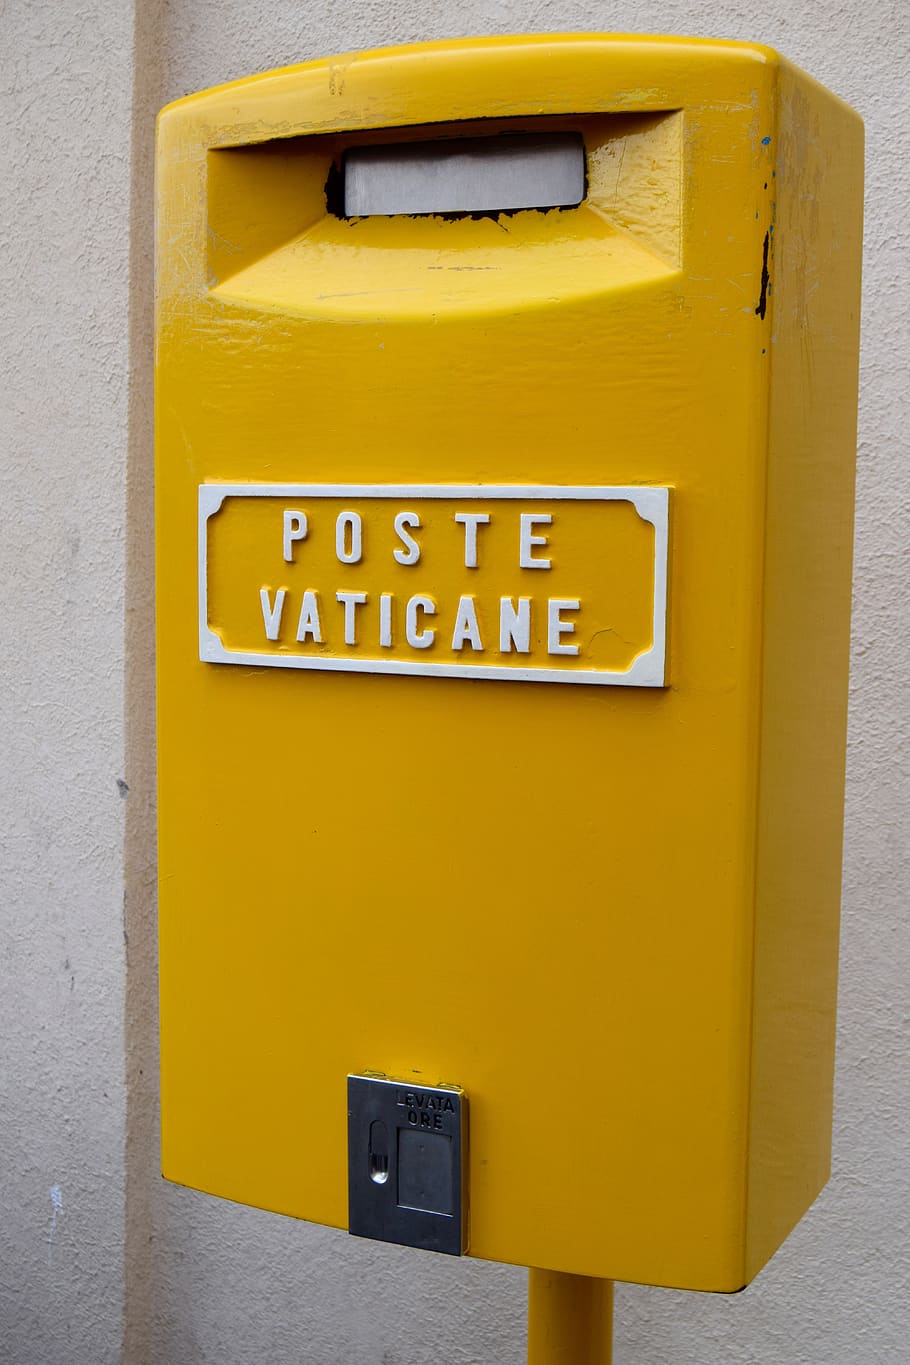 amarelo, caixa postal, correio do vaticano, comunicação, caixa de correio, texto, correio, carta, caixa de correio pública, roteiro ocidental